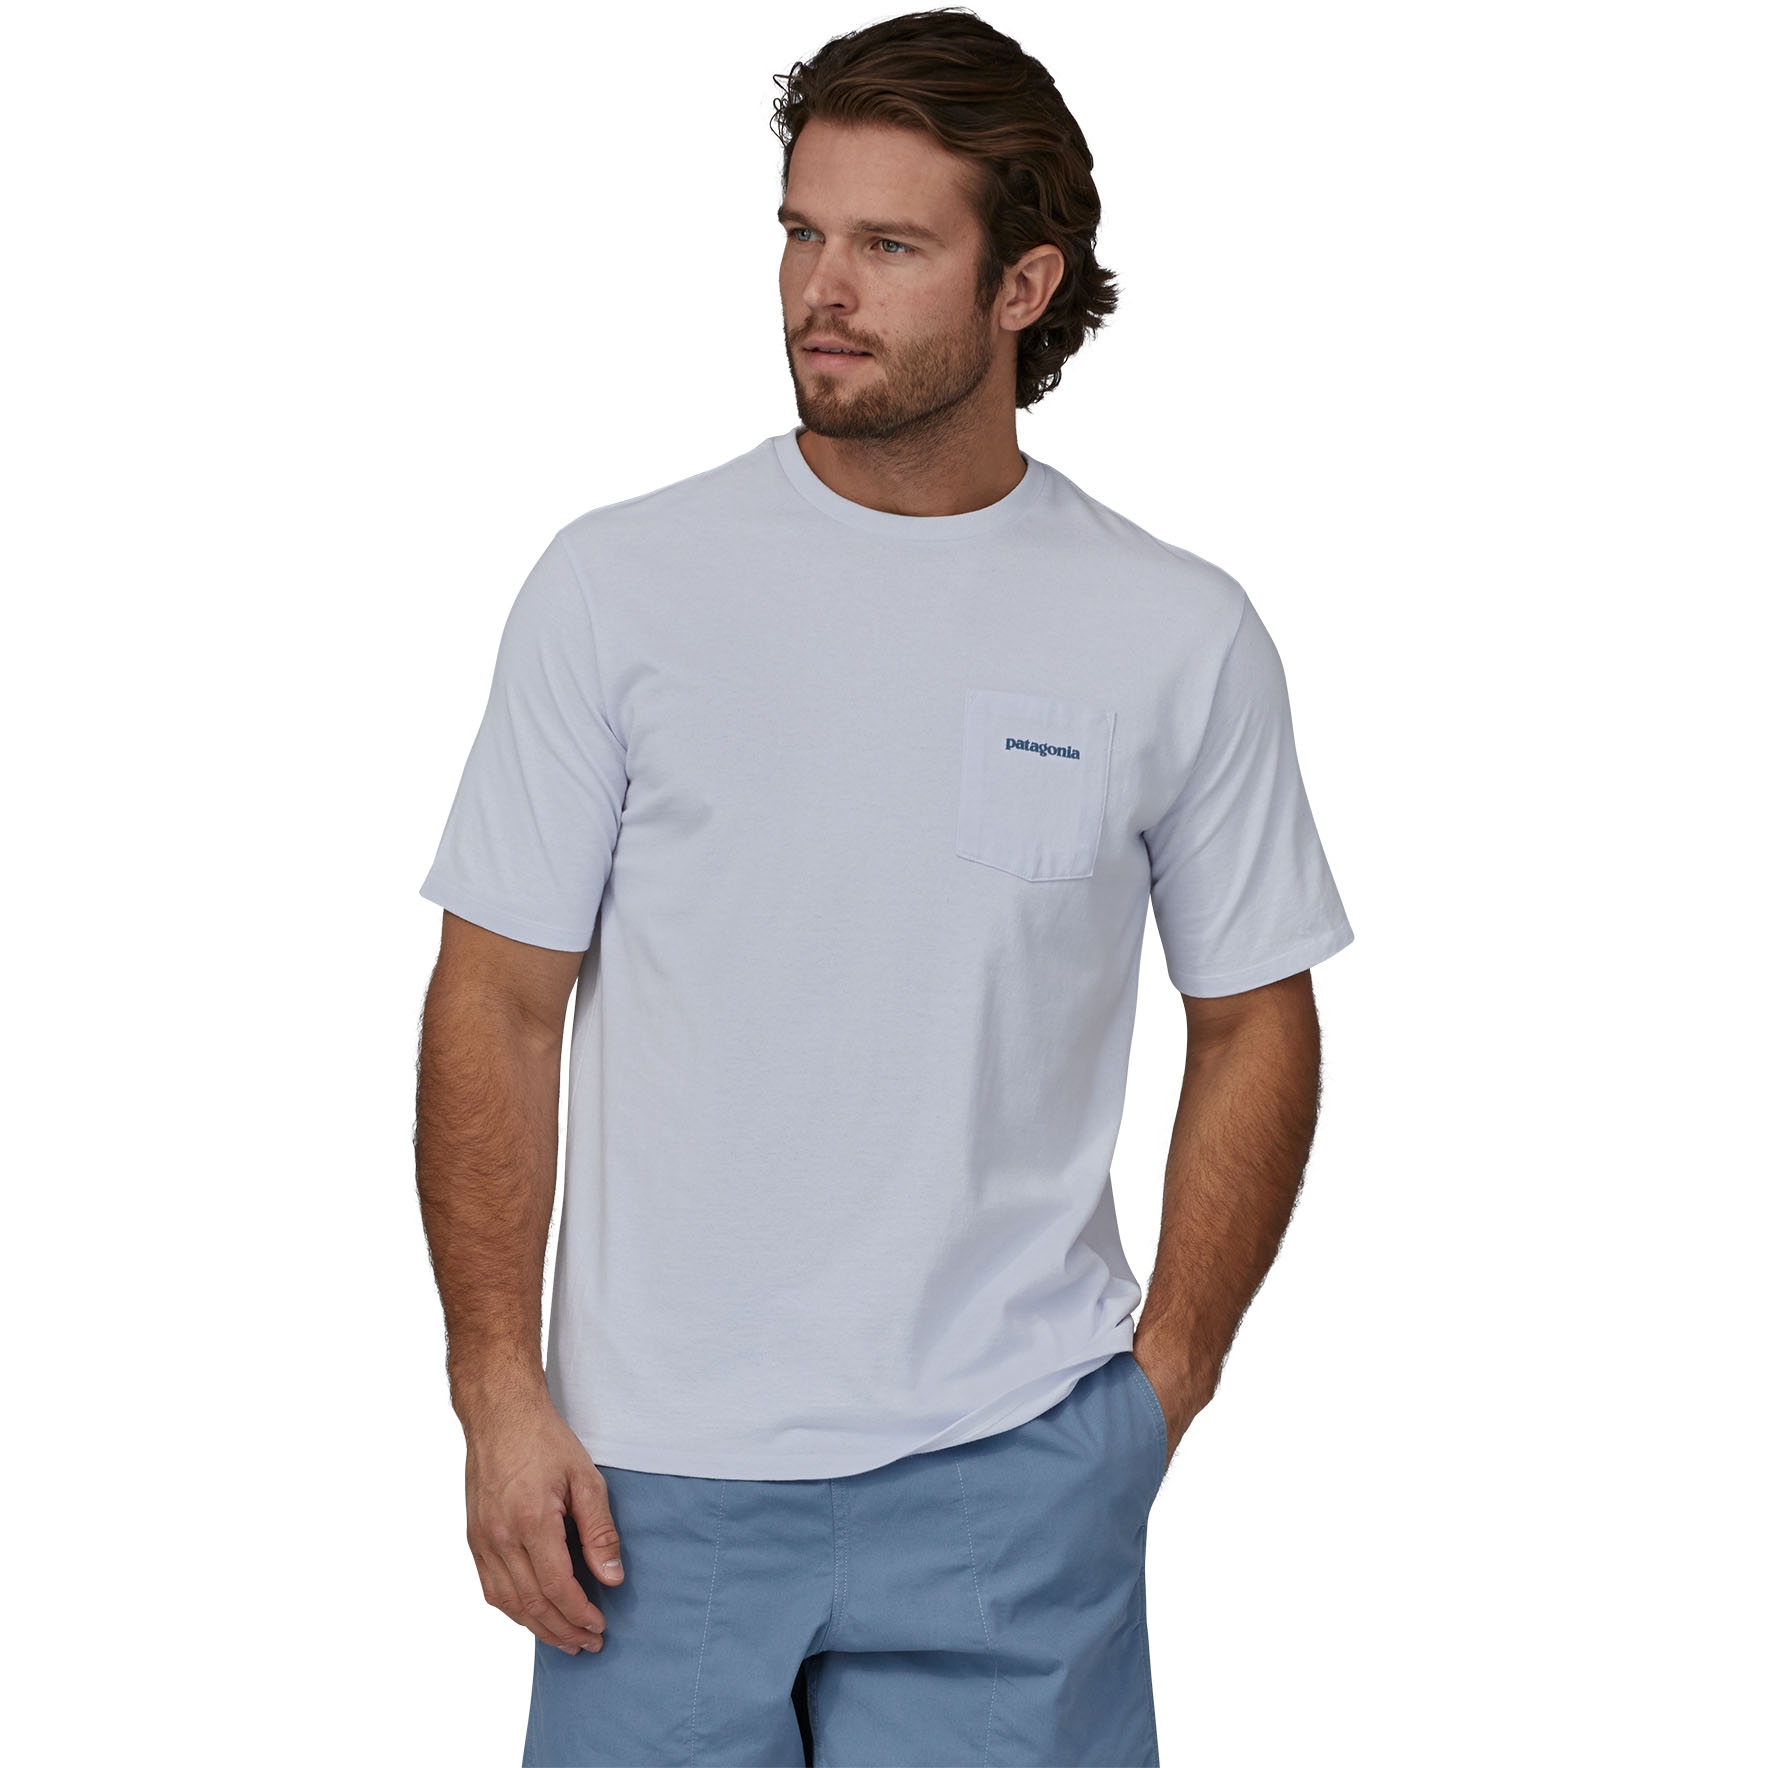 Produktbild von Patagonia Boardshort Logo Pocket Responsibili-Tee T-Shirt Herren - weiß